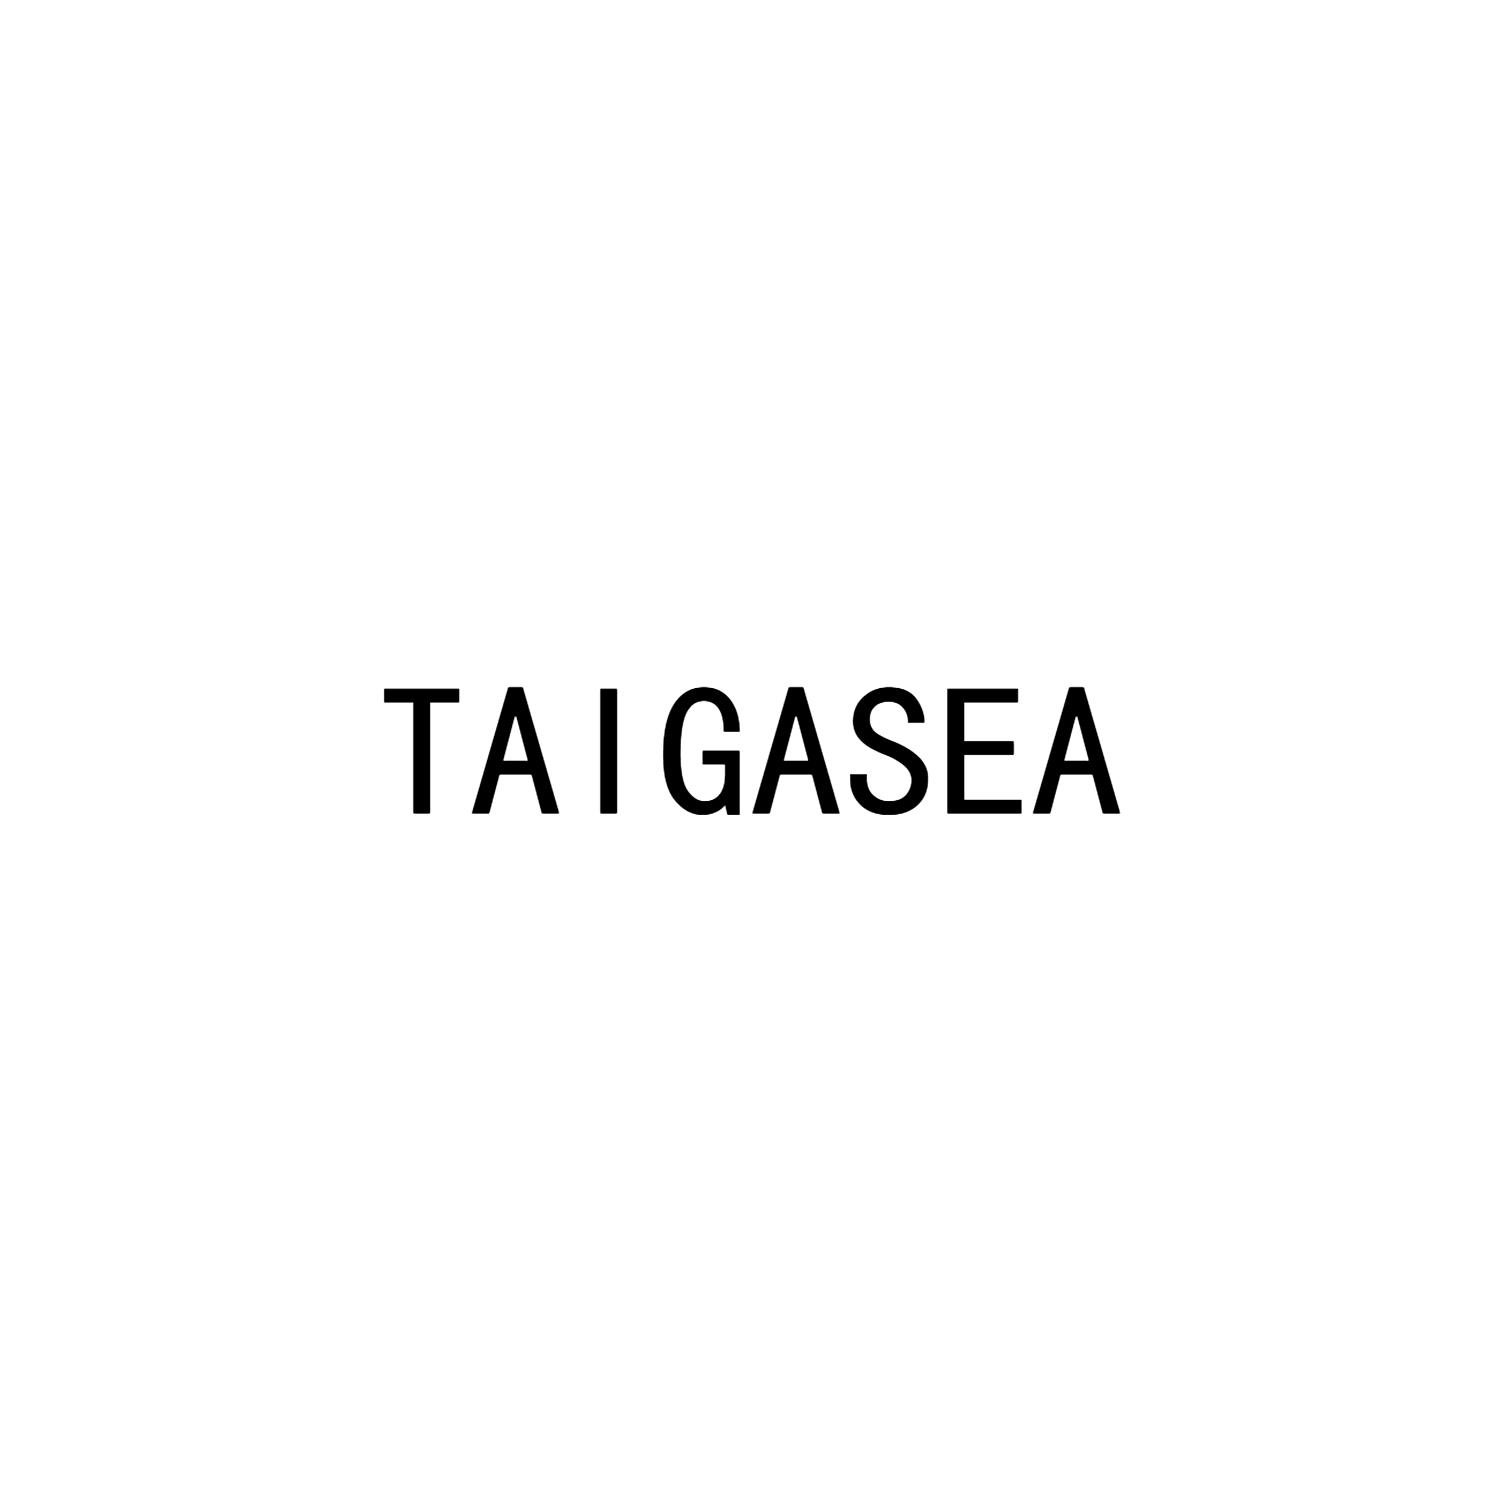 TAIGASEA